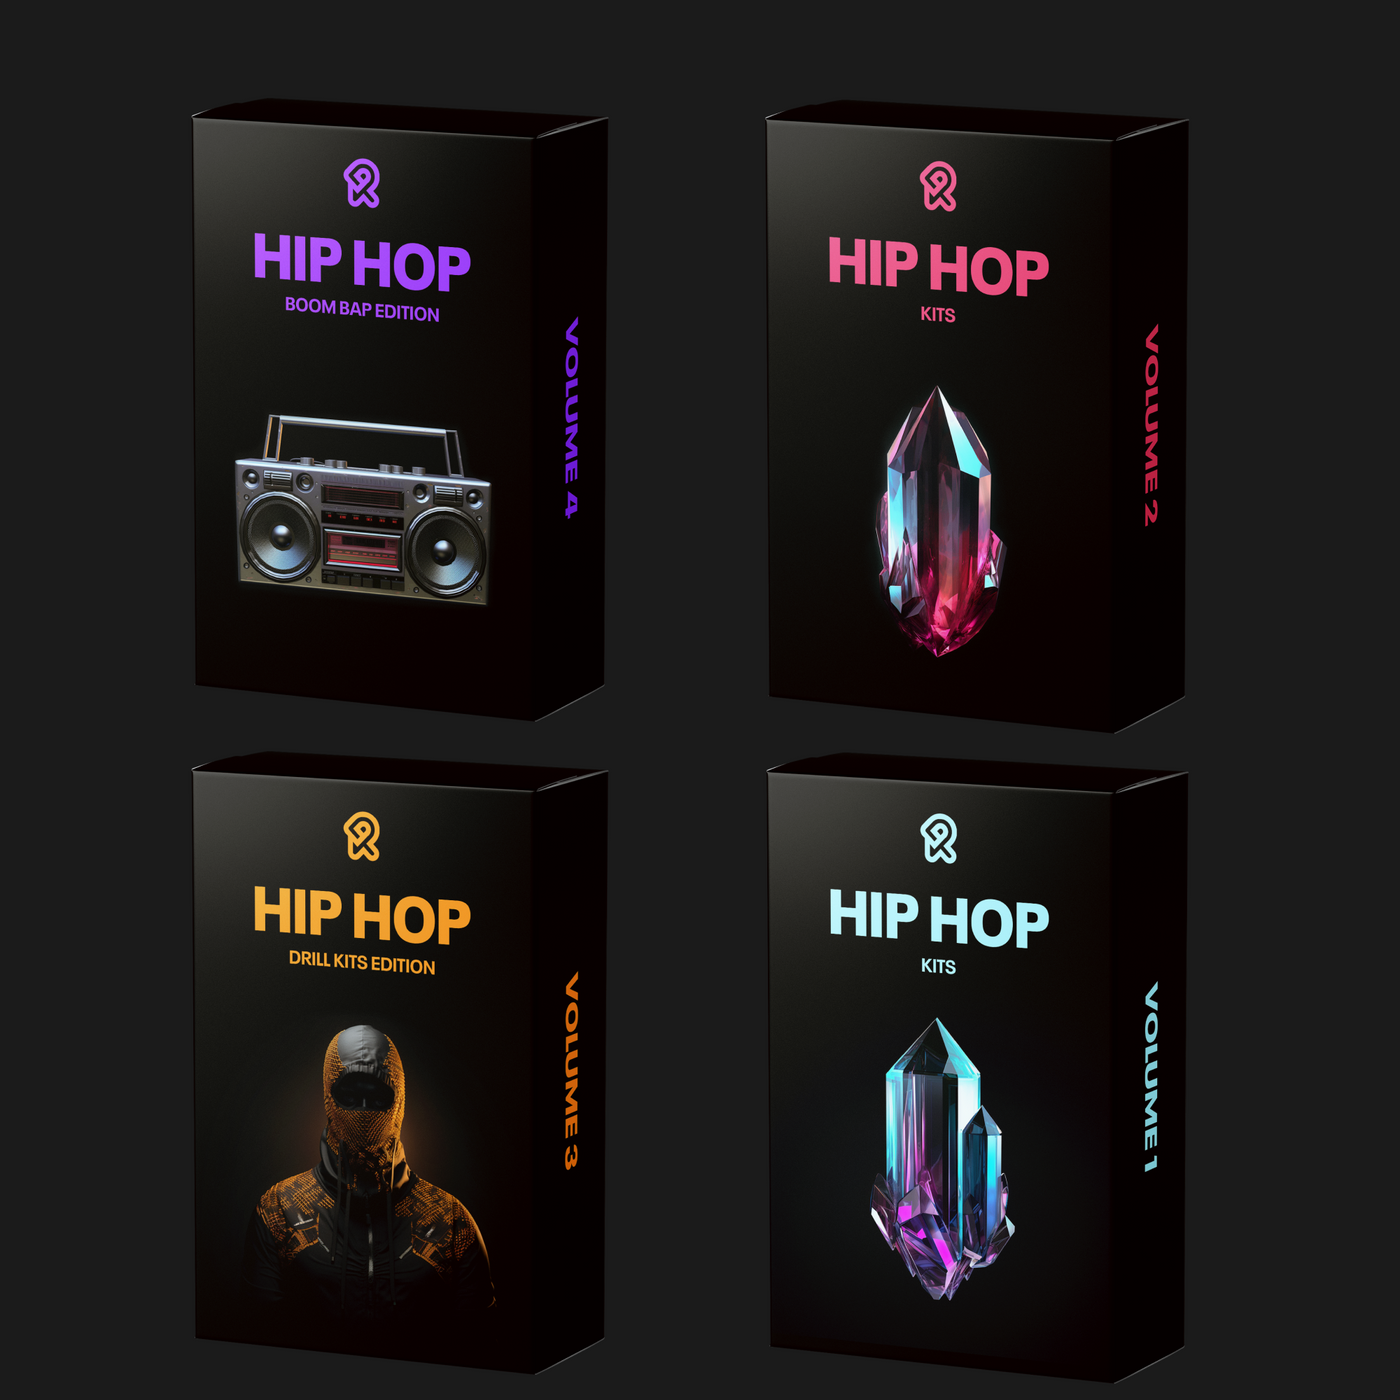 BUNDLE - ALL Hip Hop Kits (Vol. 1 - 4)